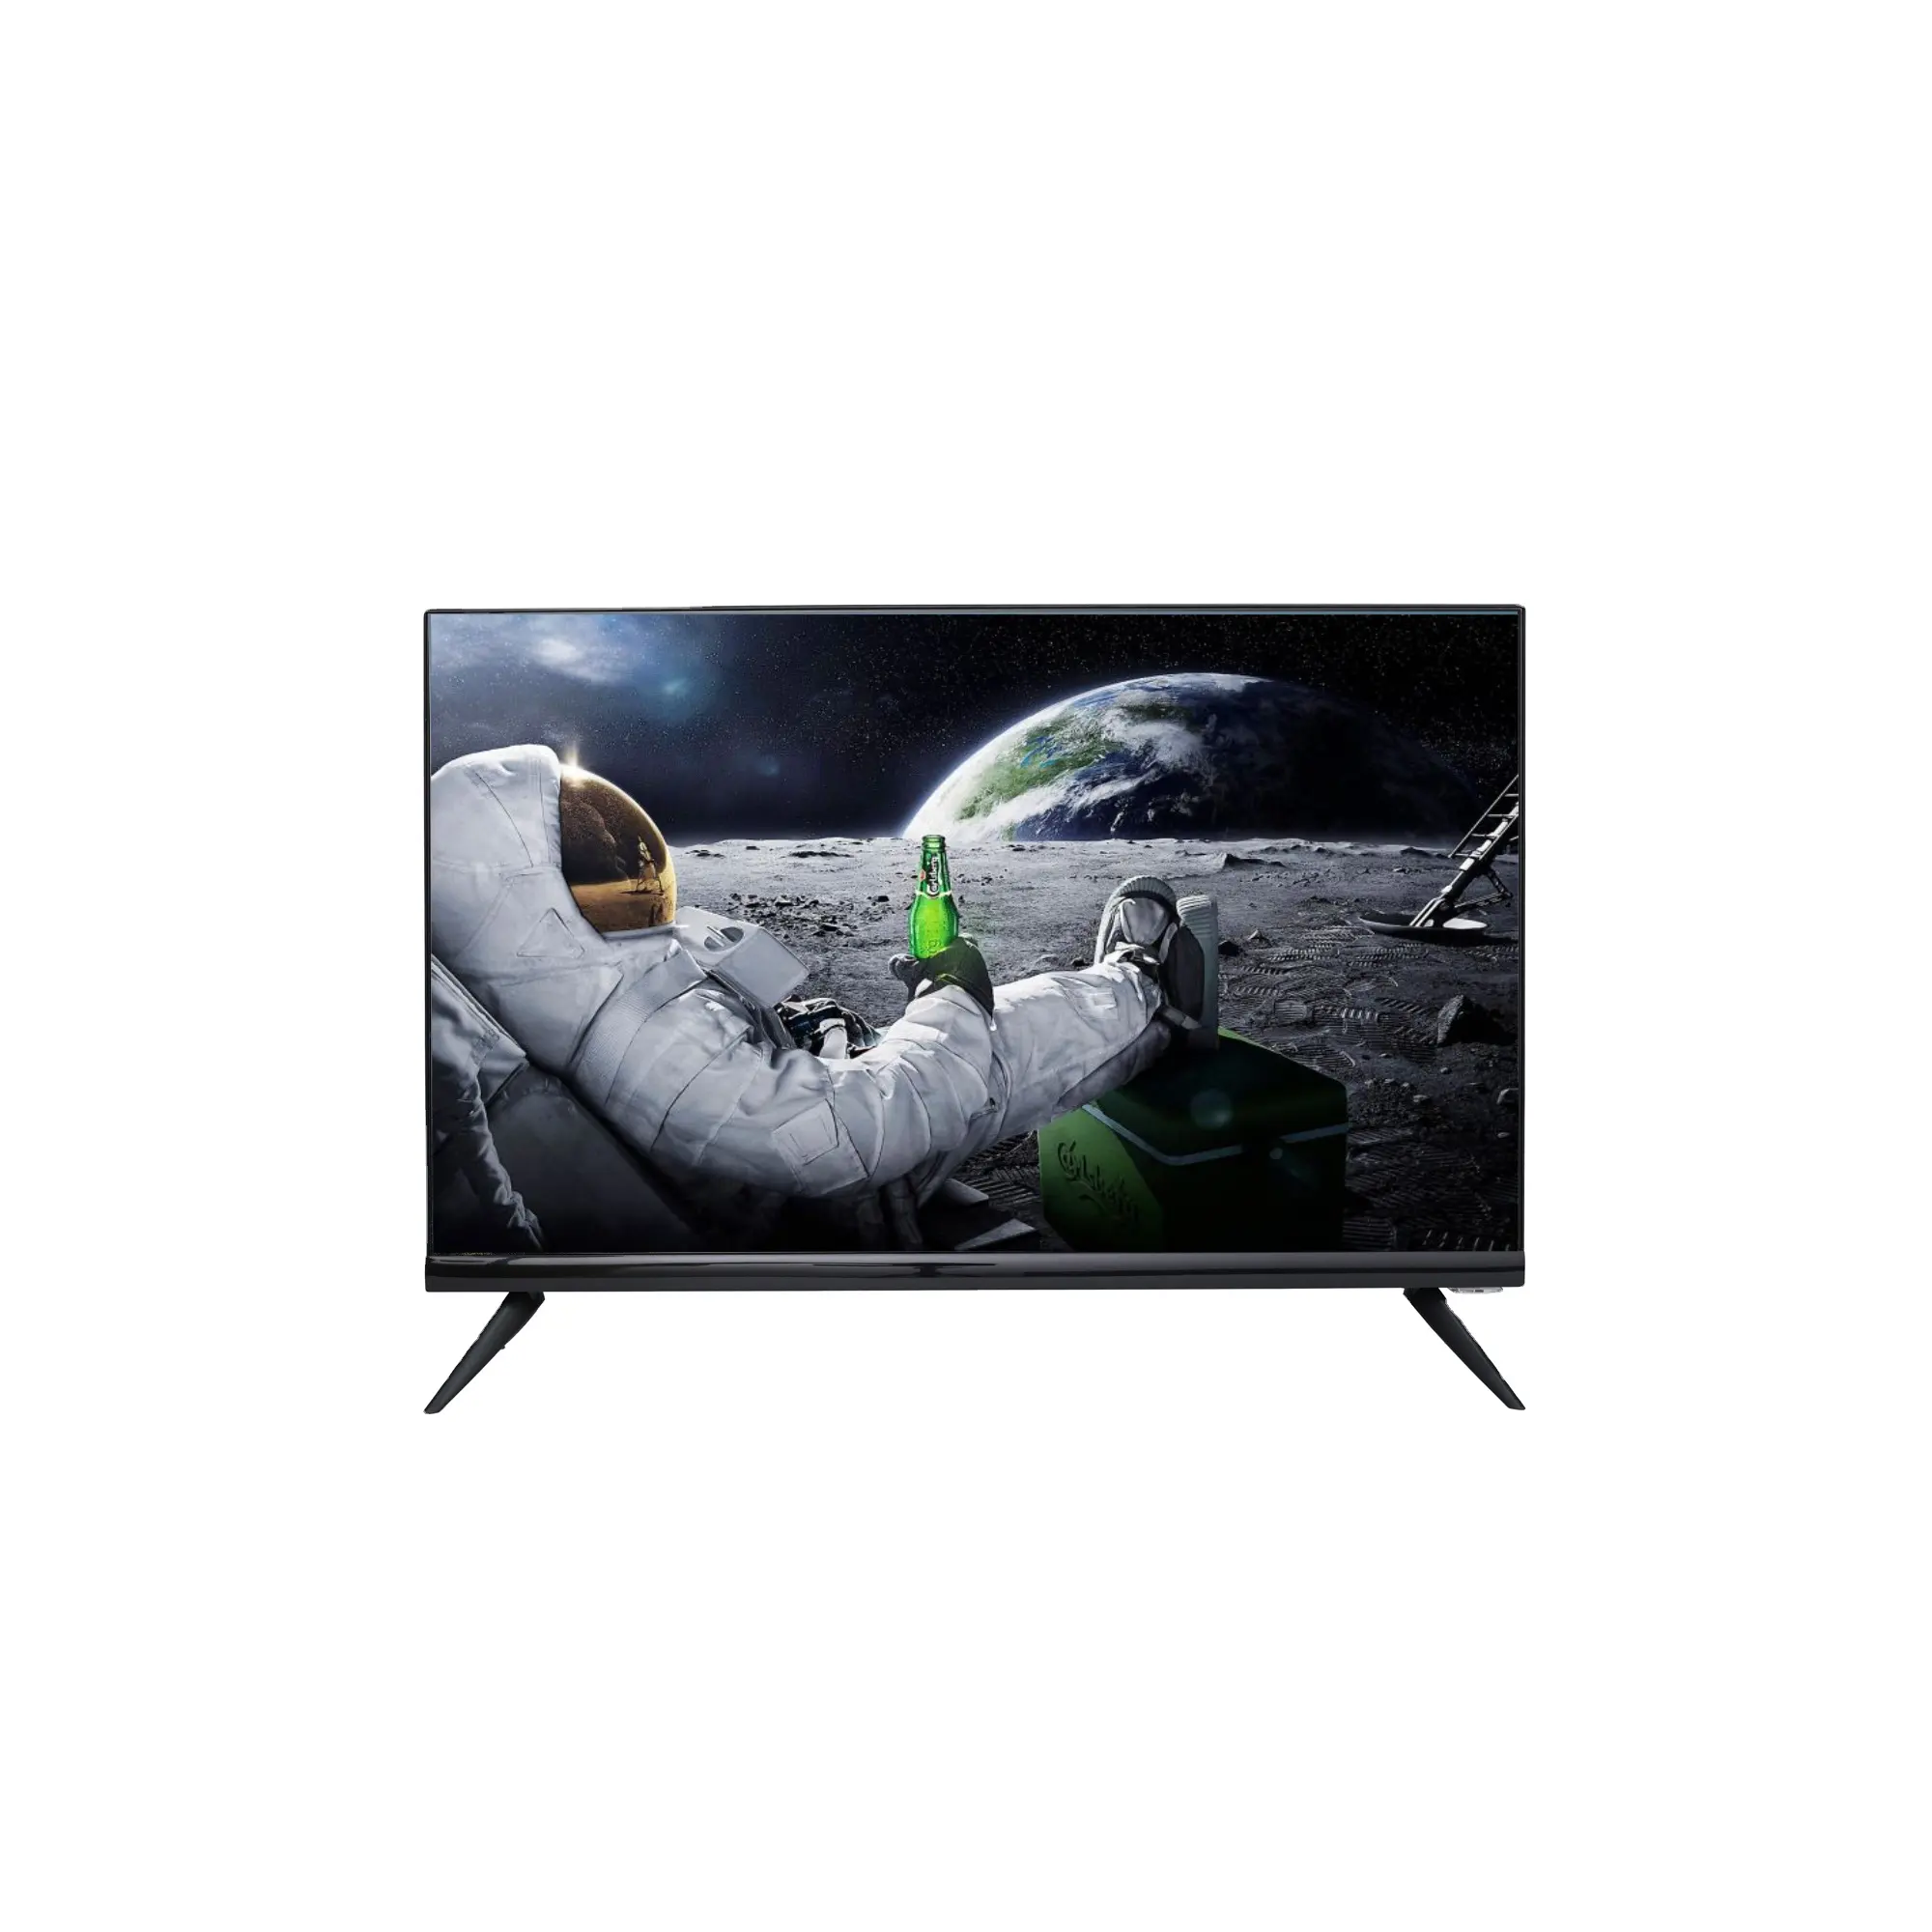 Android akıllı tv OEM tv fabrika ucuz fiyat yıldız X yıldız sat marka üretmek fabrika 32 24 22 19 43 inç led tv